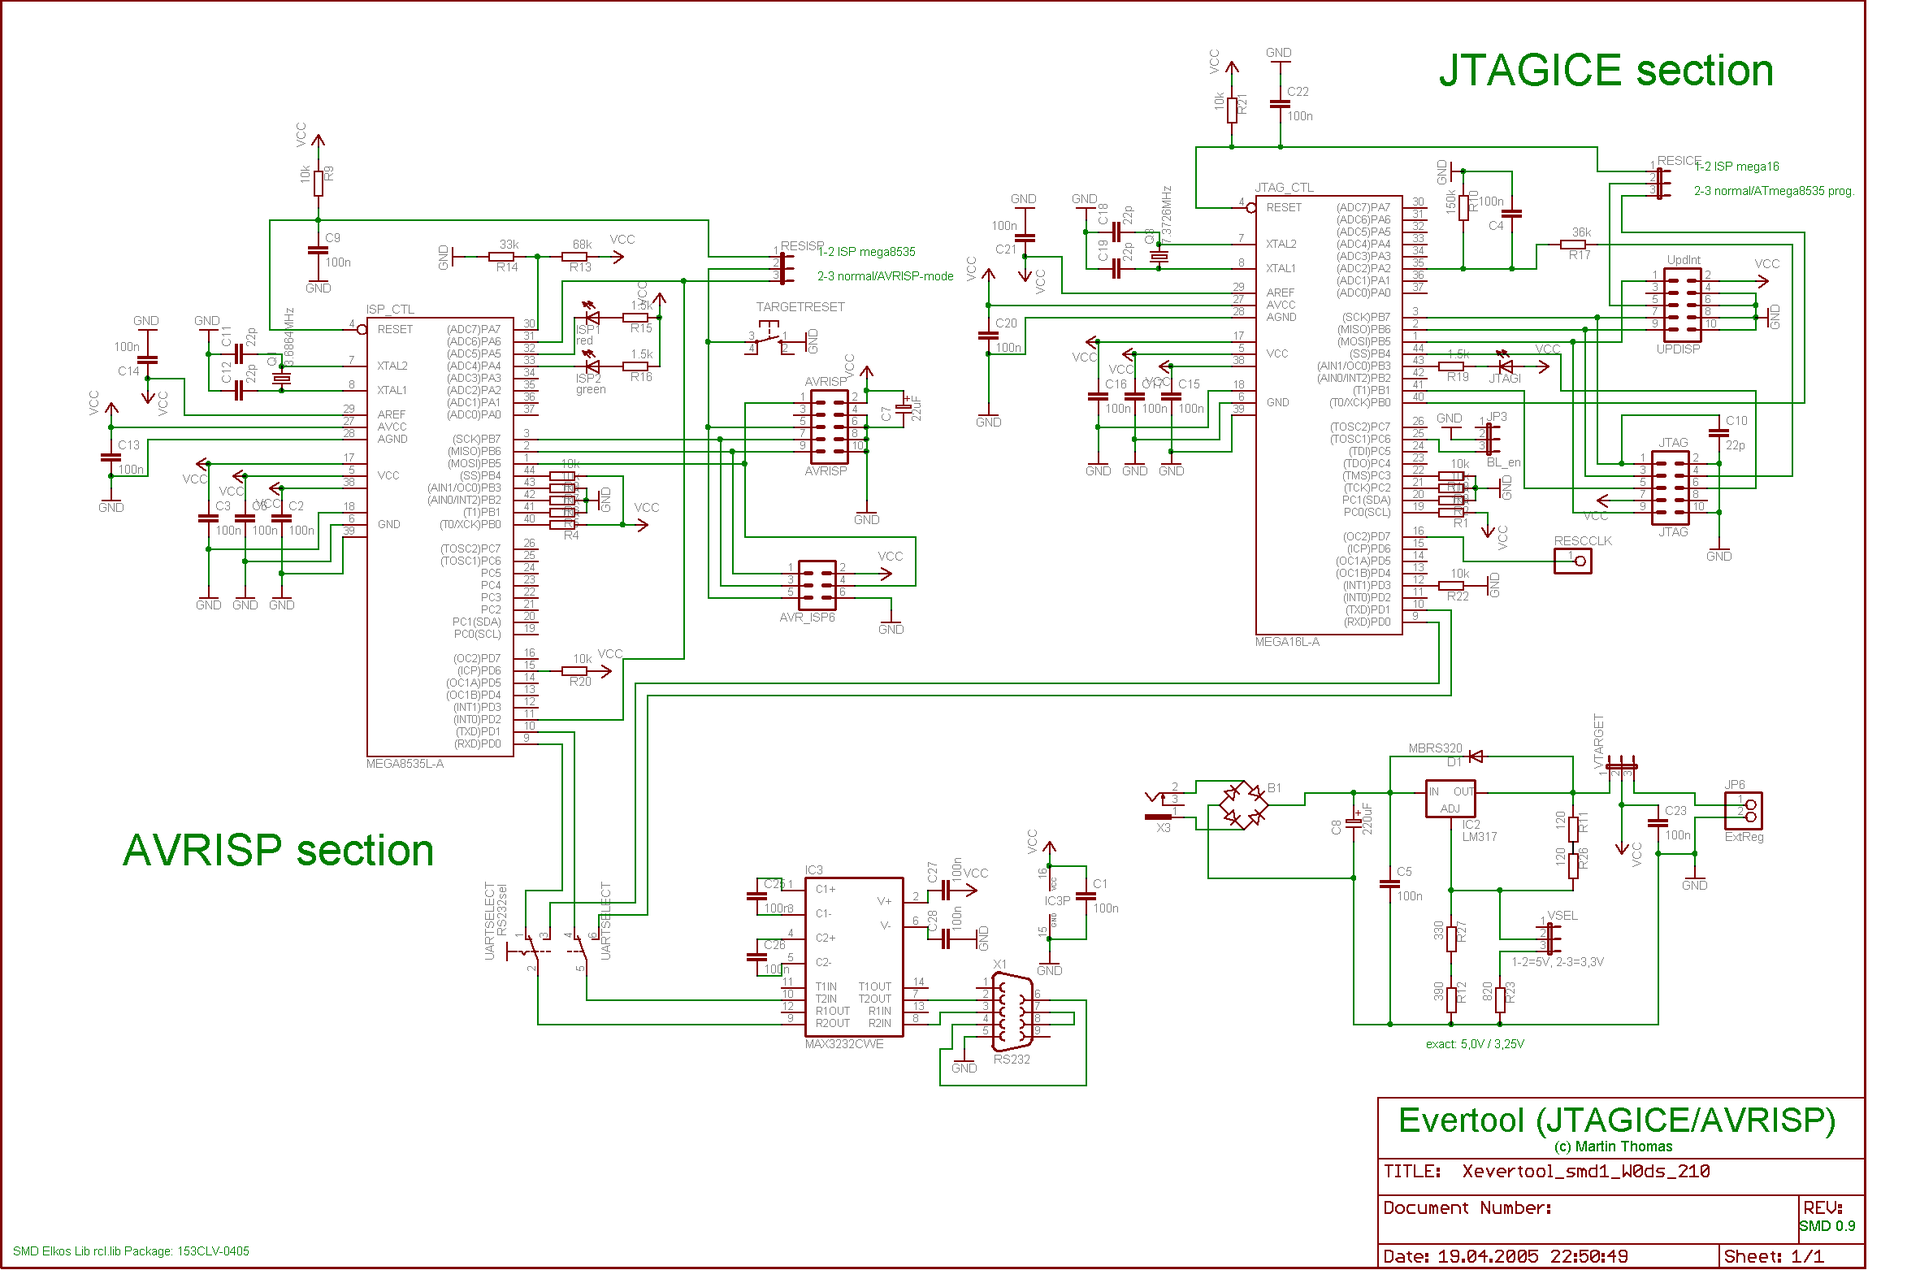 Прогаммирование и JTAG отладка микроконтроллера Atmega16 на языке C в среде IAR, часть 1